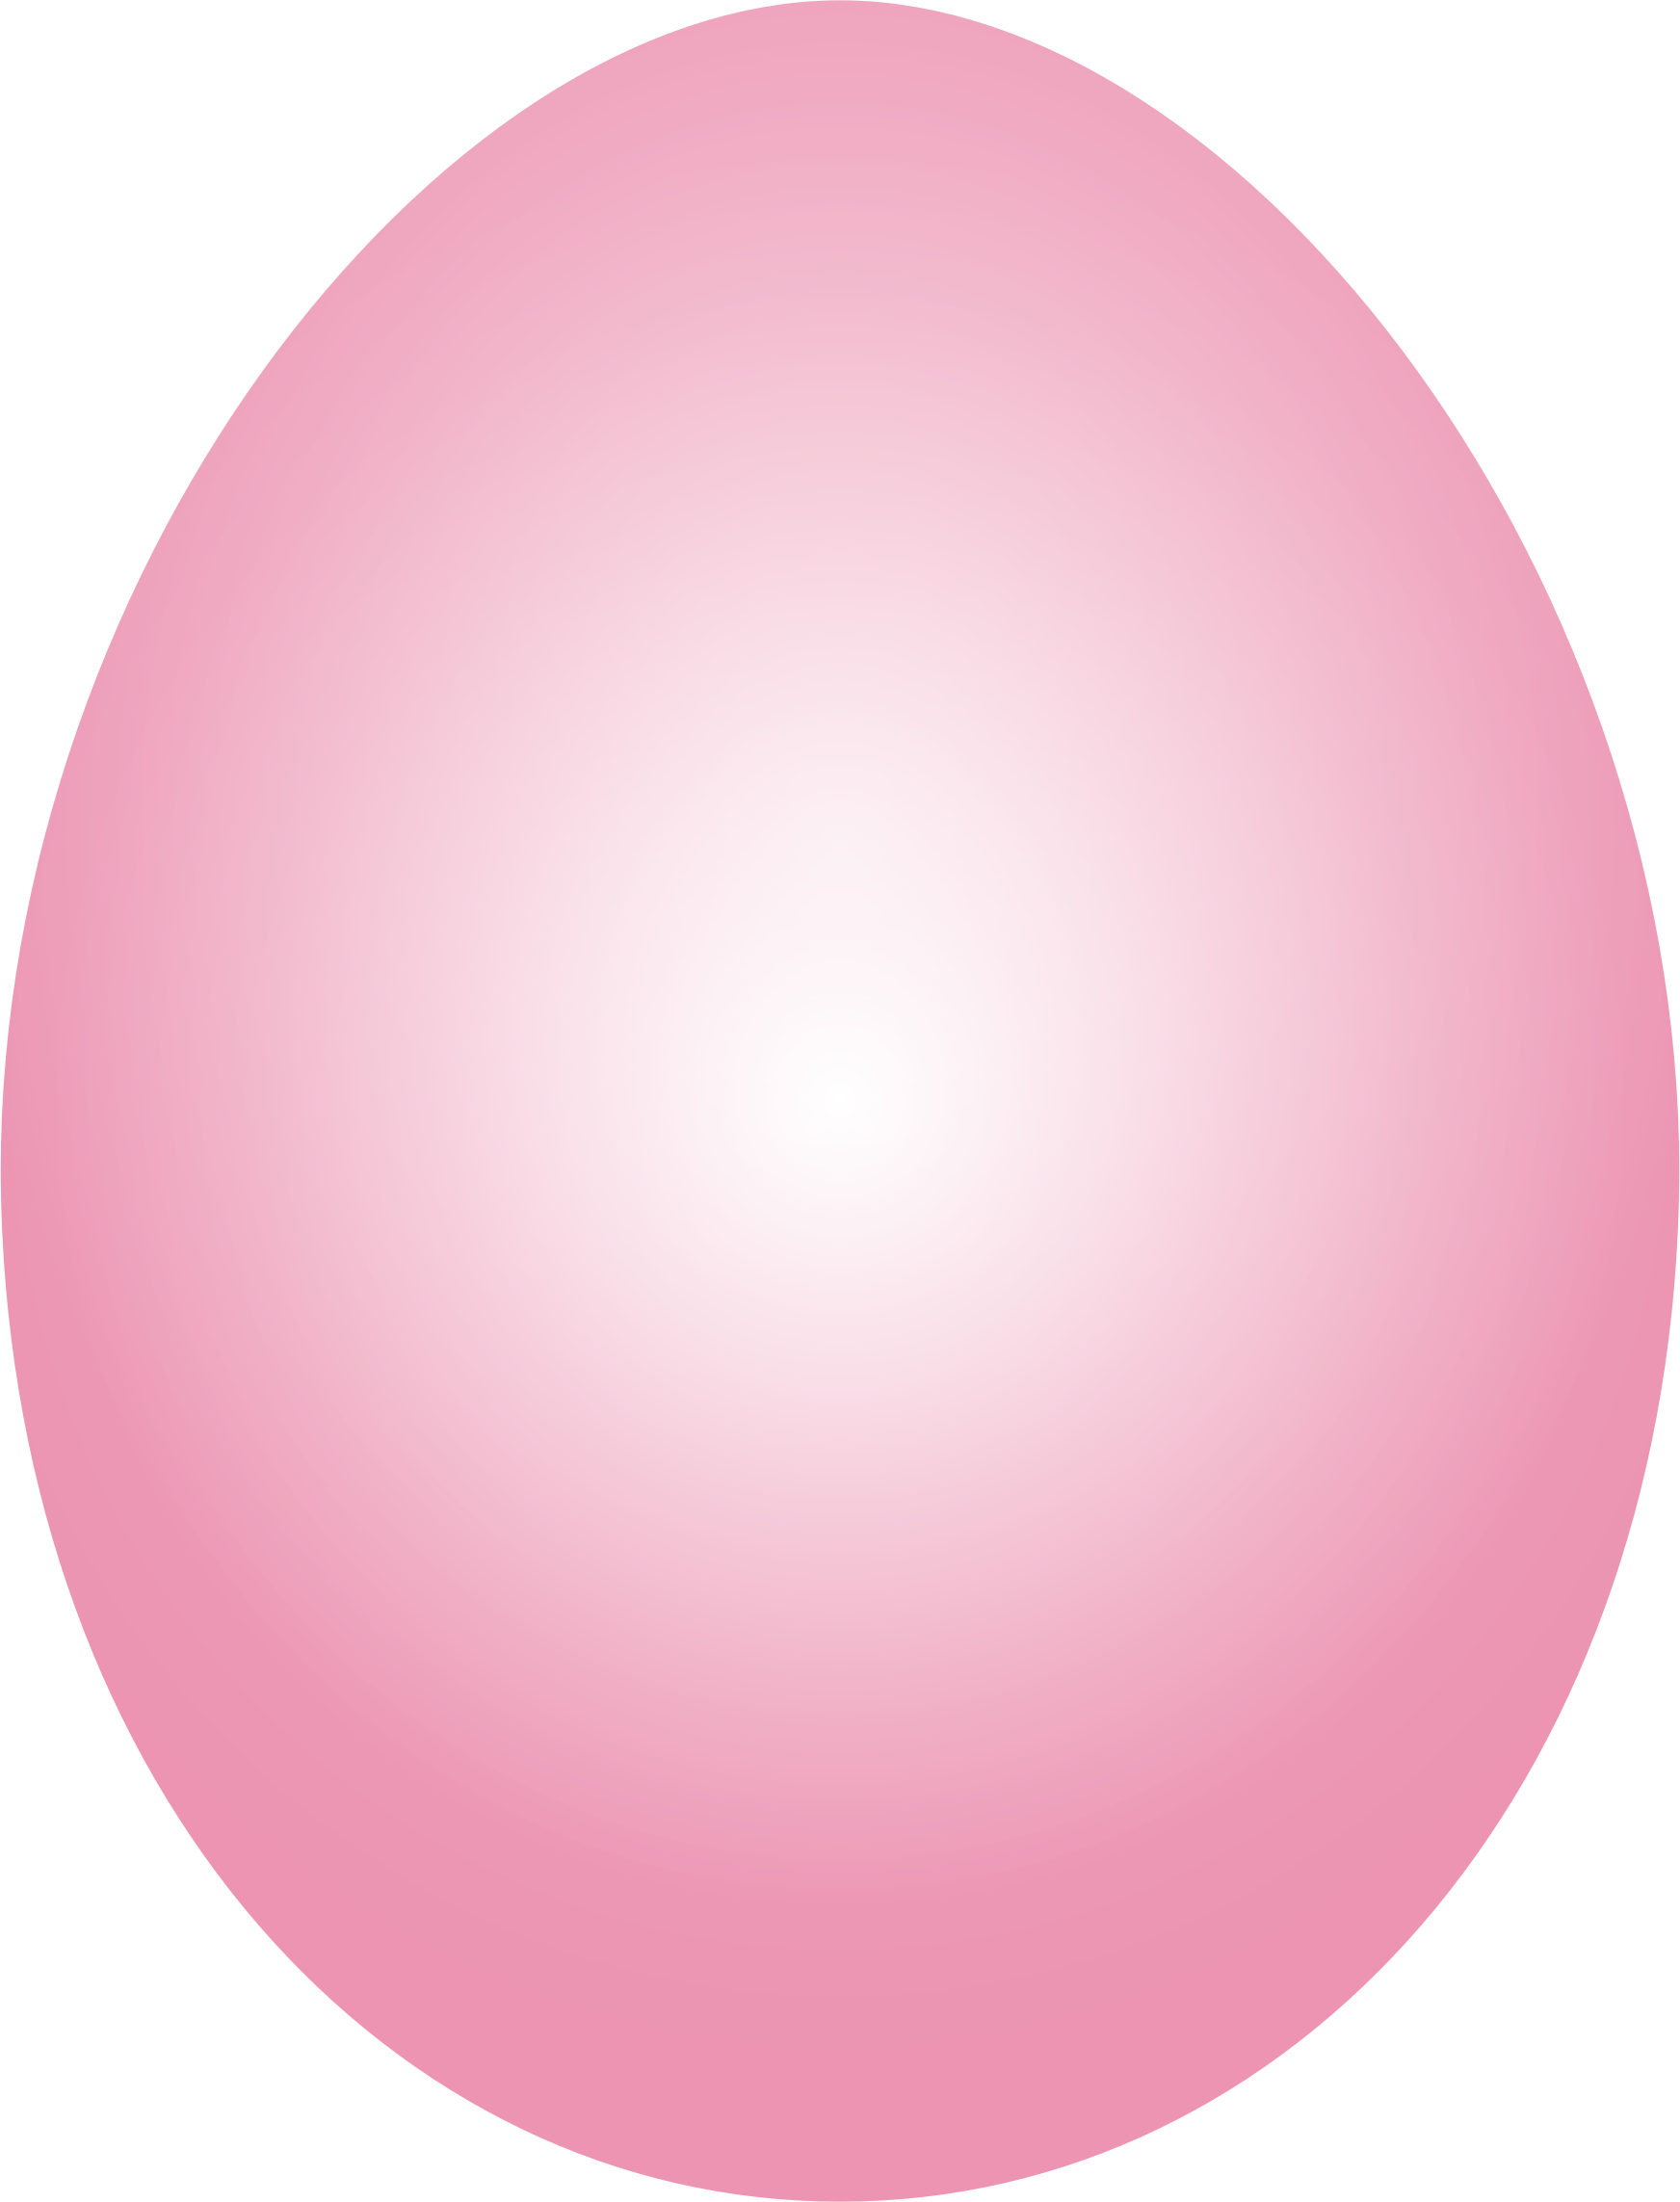 Telur merah muda